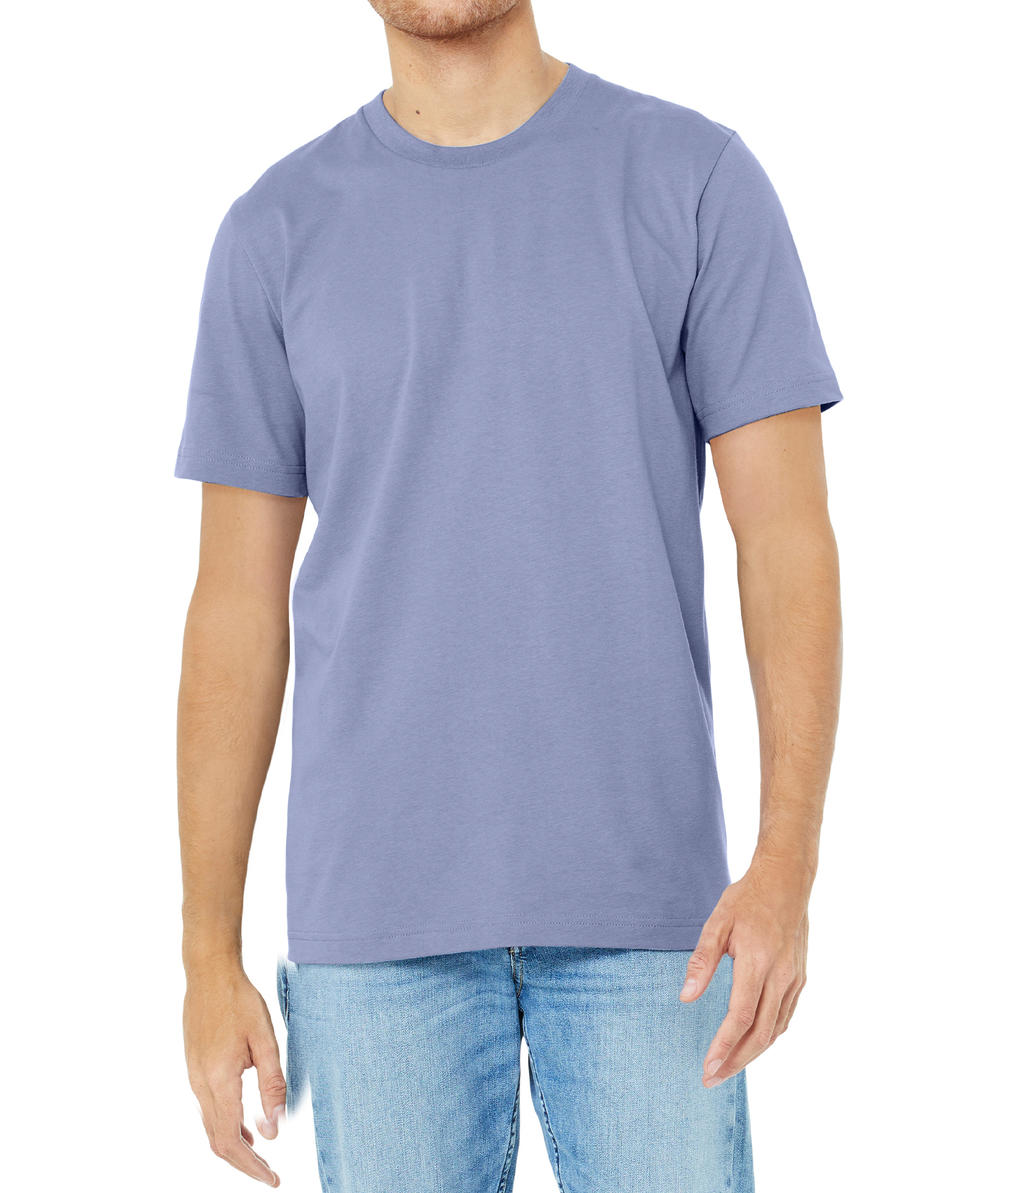 Tričko Bella Jersey - fialové-modré, XL